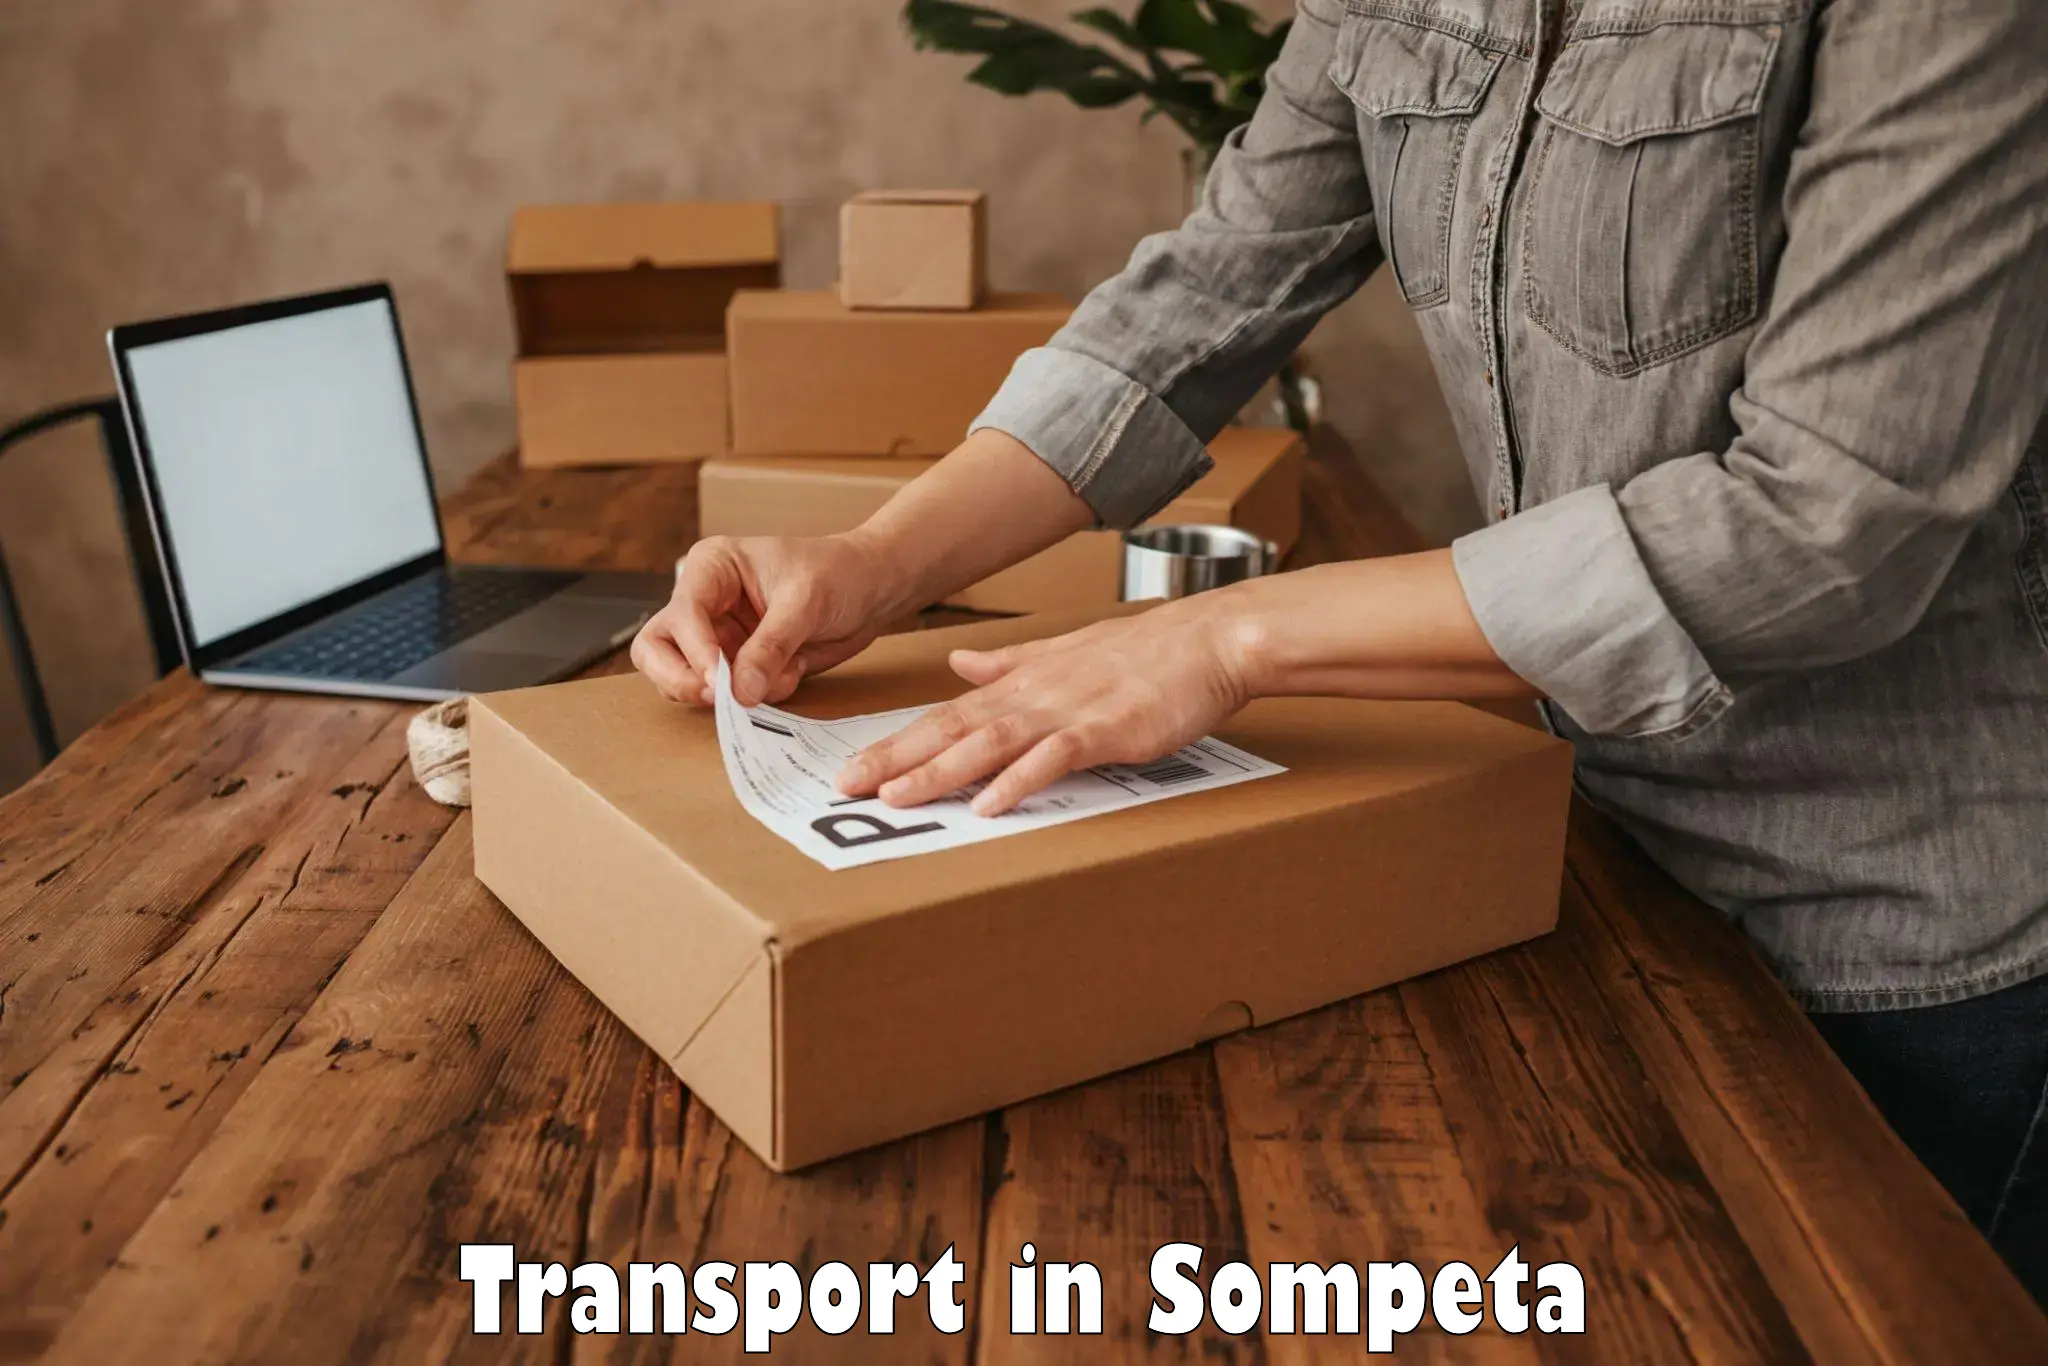 Bike transport service in Sompeta